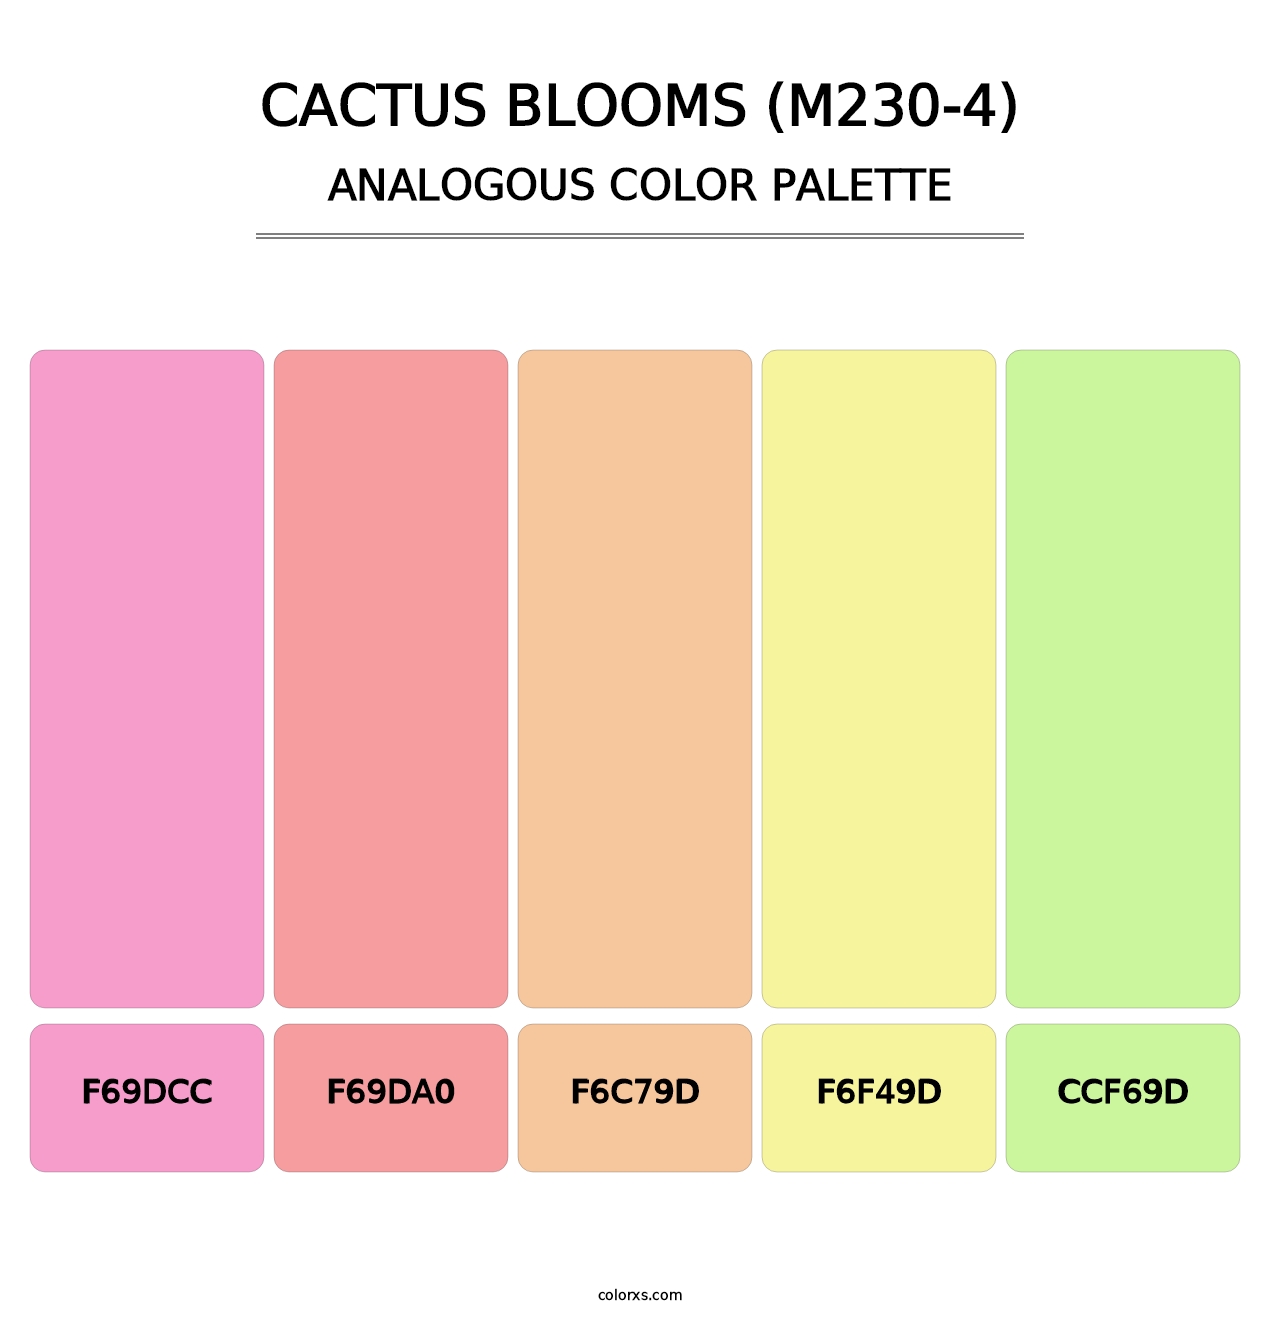 Cactus Blooms (M230-4) - Analogous Color Palette